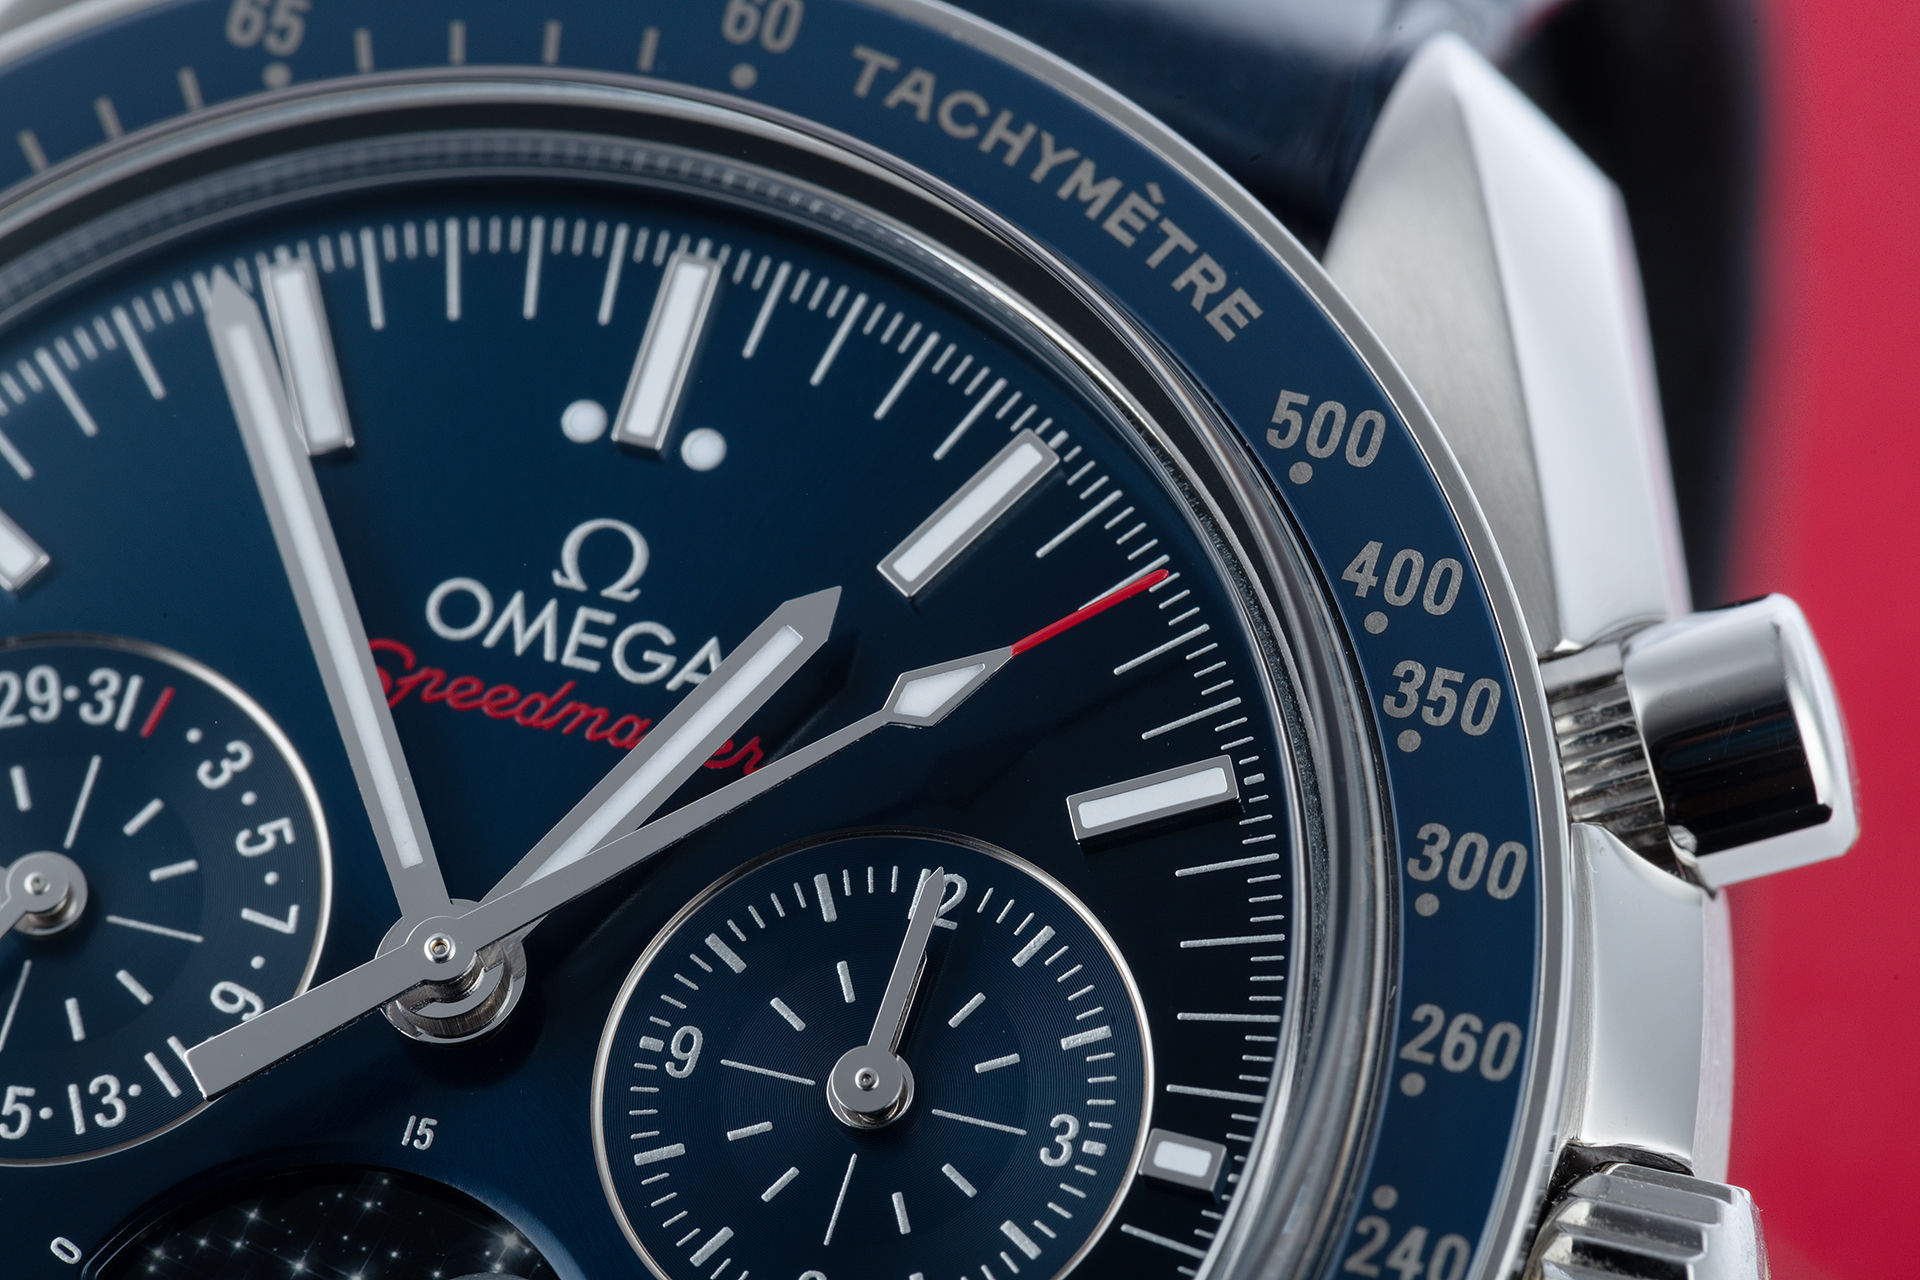 ref 30433445203001 | 'Master Chronometer' Complete Set | Omega Speedmaster